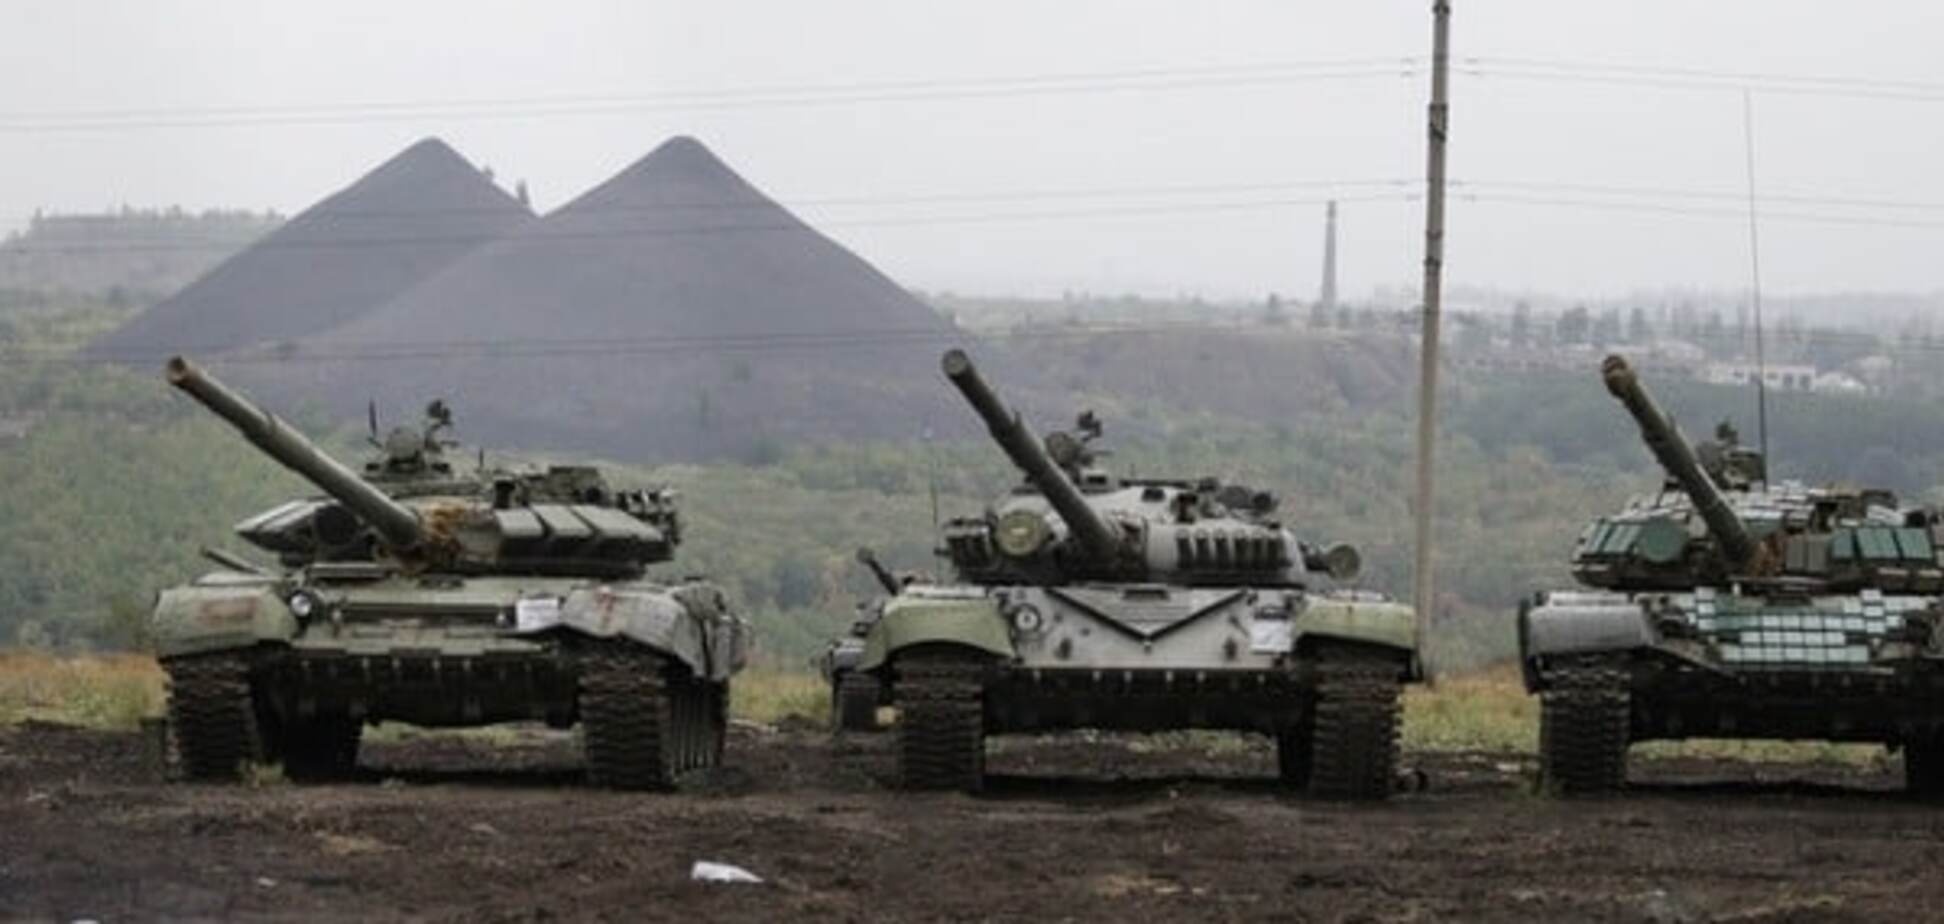 От запрещенного до новейшего: разведка показала, каким оружием Россия воюет против Украины